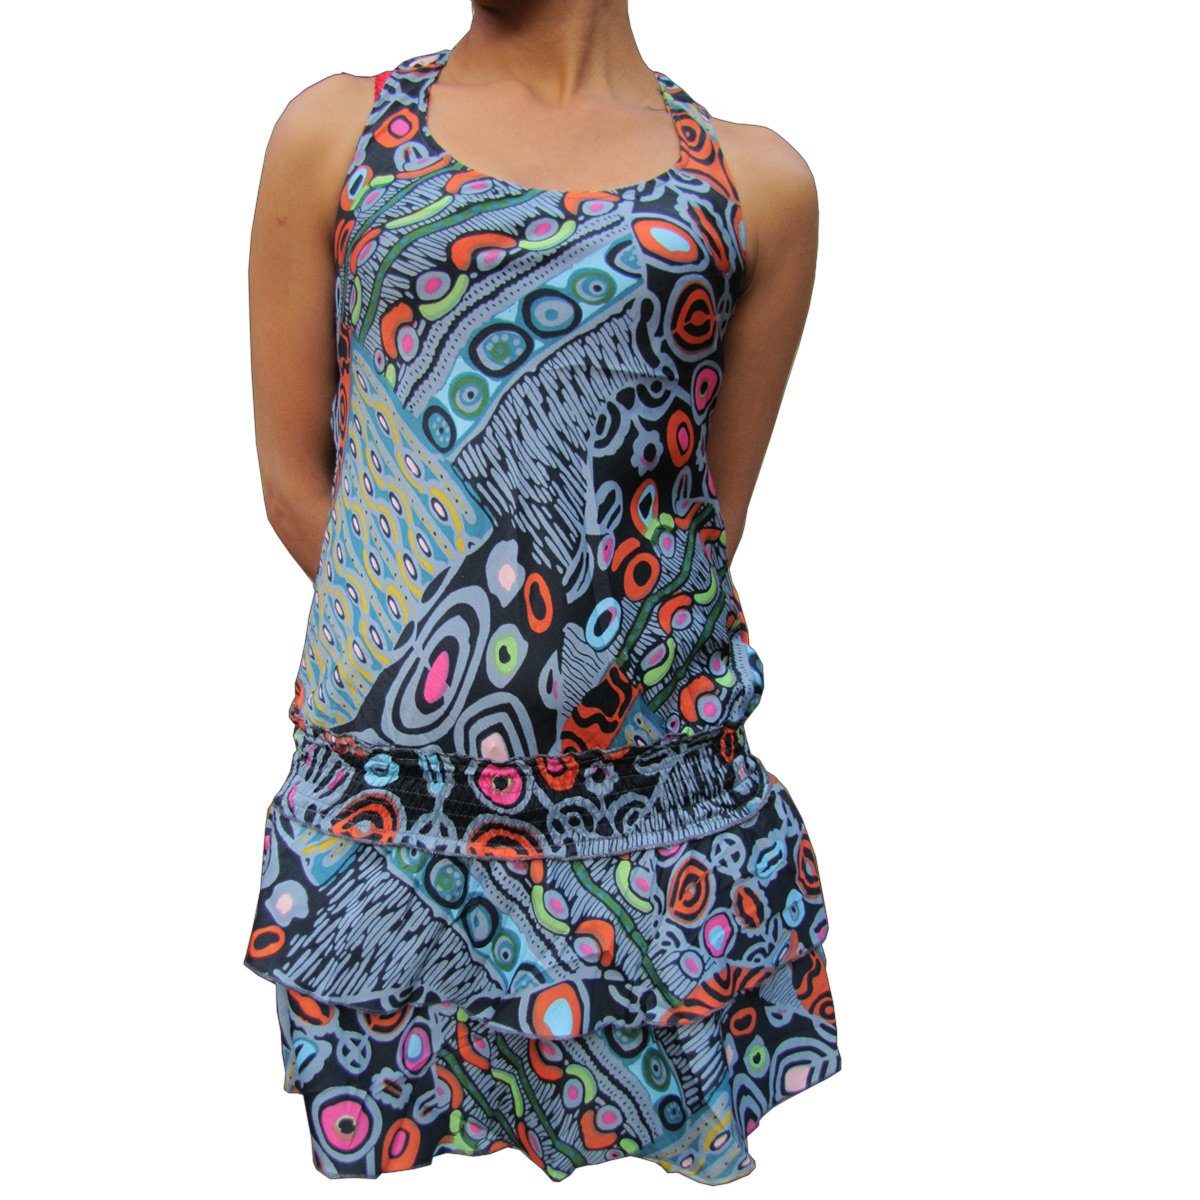 PANASIAM Tunikakleid Sommerkleid in verschiedenen Designs farbenfrohe Tunika aus feiner Viskose auch für Schlagerparty 70er Party oder Festivals ein Hingucker Blauton